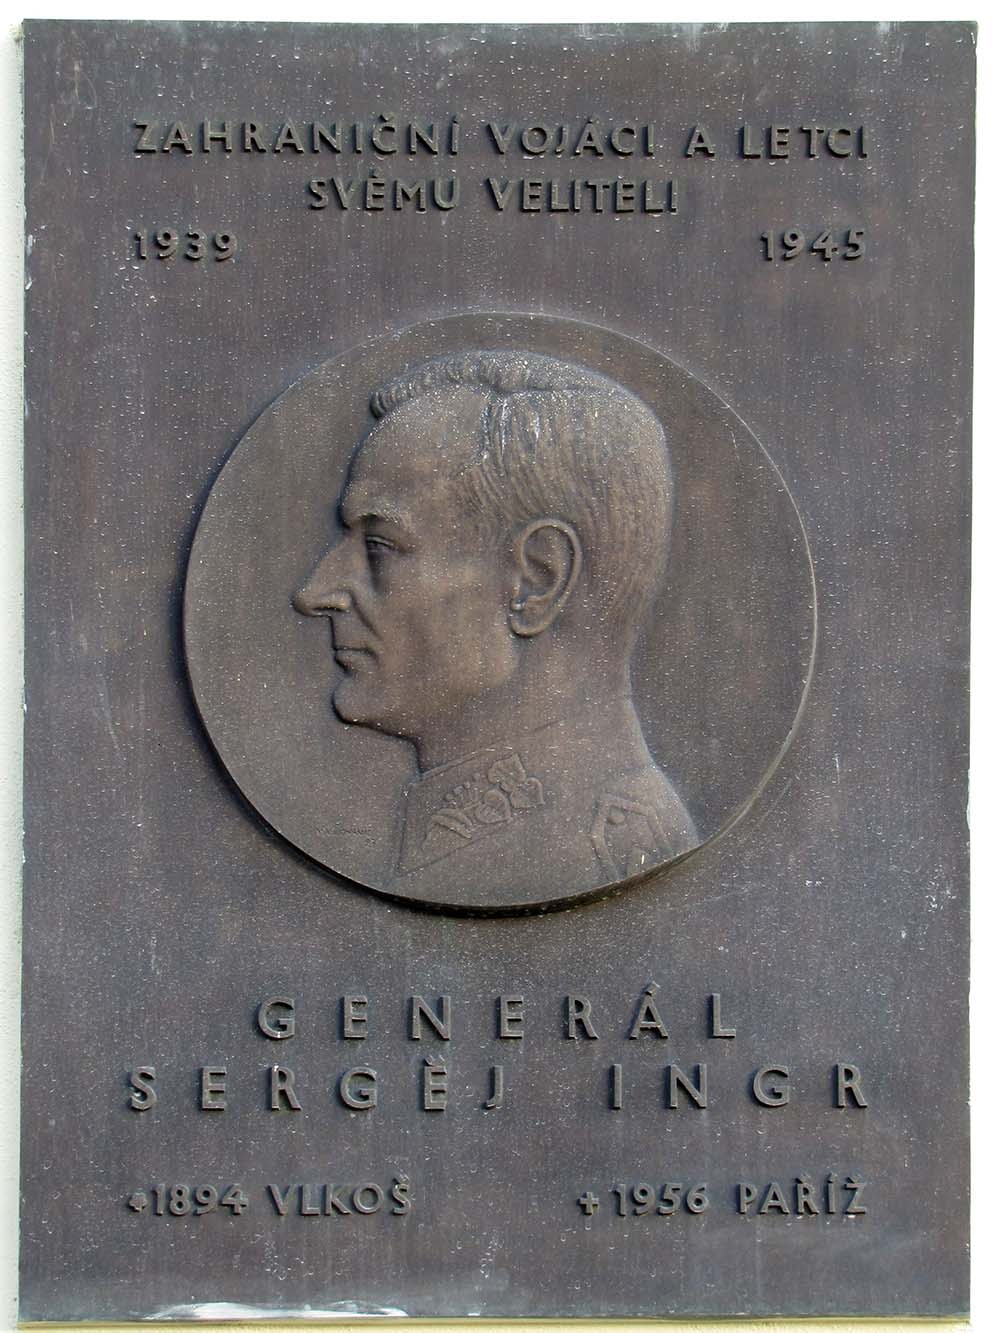 Gedenkteken Sergej Ingr